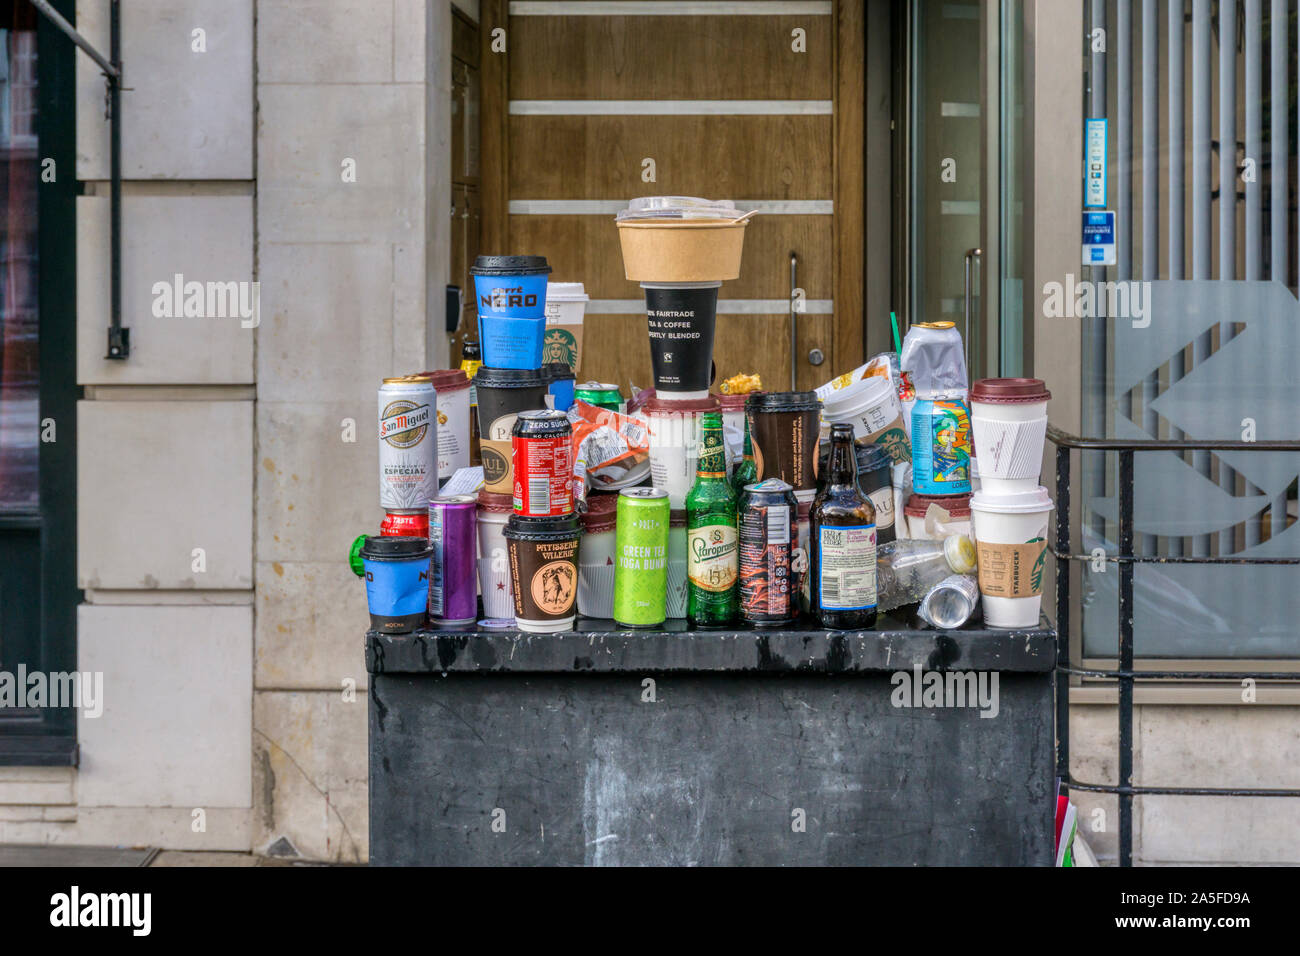 Spazzatura bilanciato su arredo urbano dopo la manifestazione di protesta nel centro di Londra. Takeaway tazze da caffè, lattine di birra e bottiglie e rapida di contenitori per alimenti. Foto Stock